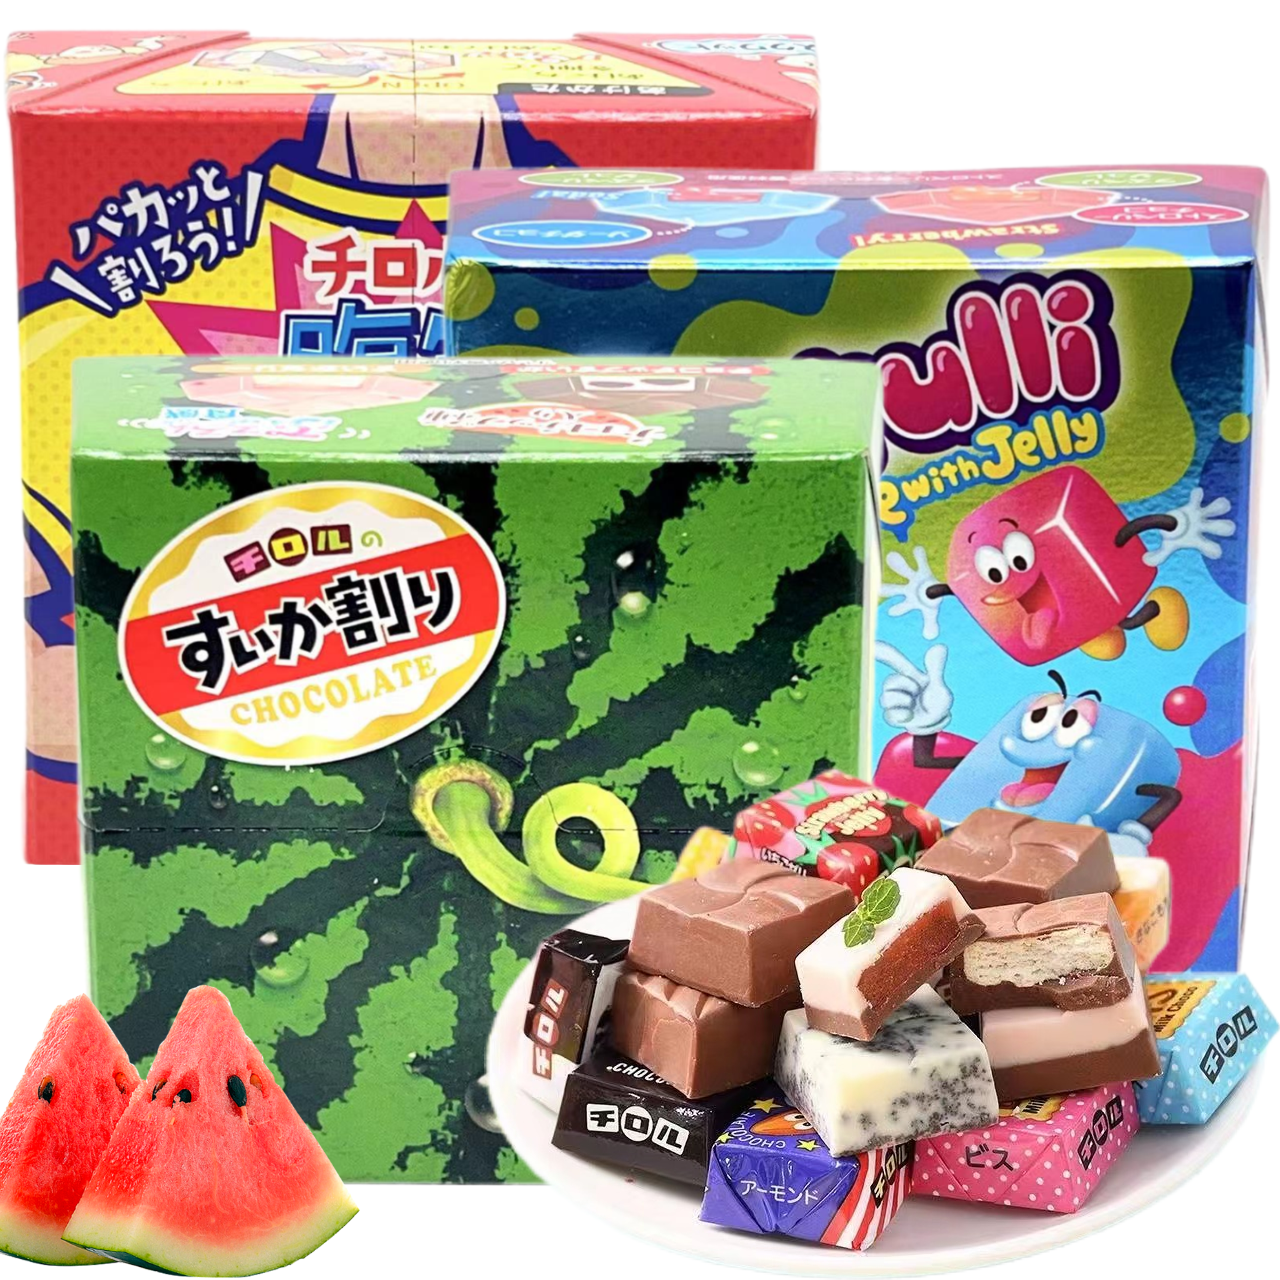 日本进口松尾草莓汽水味香蕉酸奶味西瓜什锦味巧克力12枚盒装零食